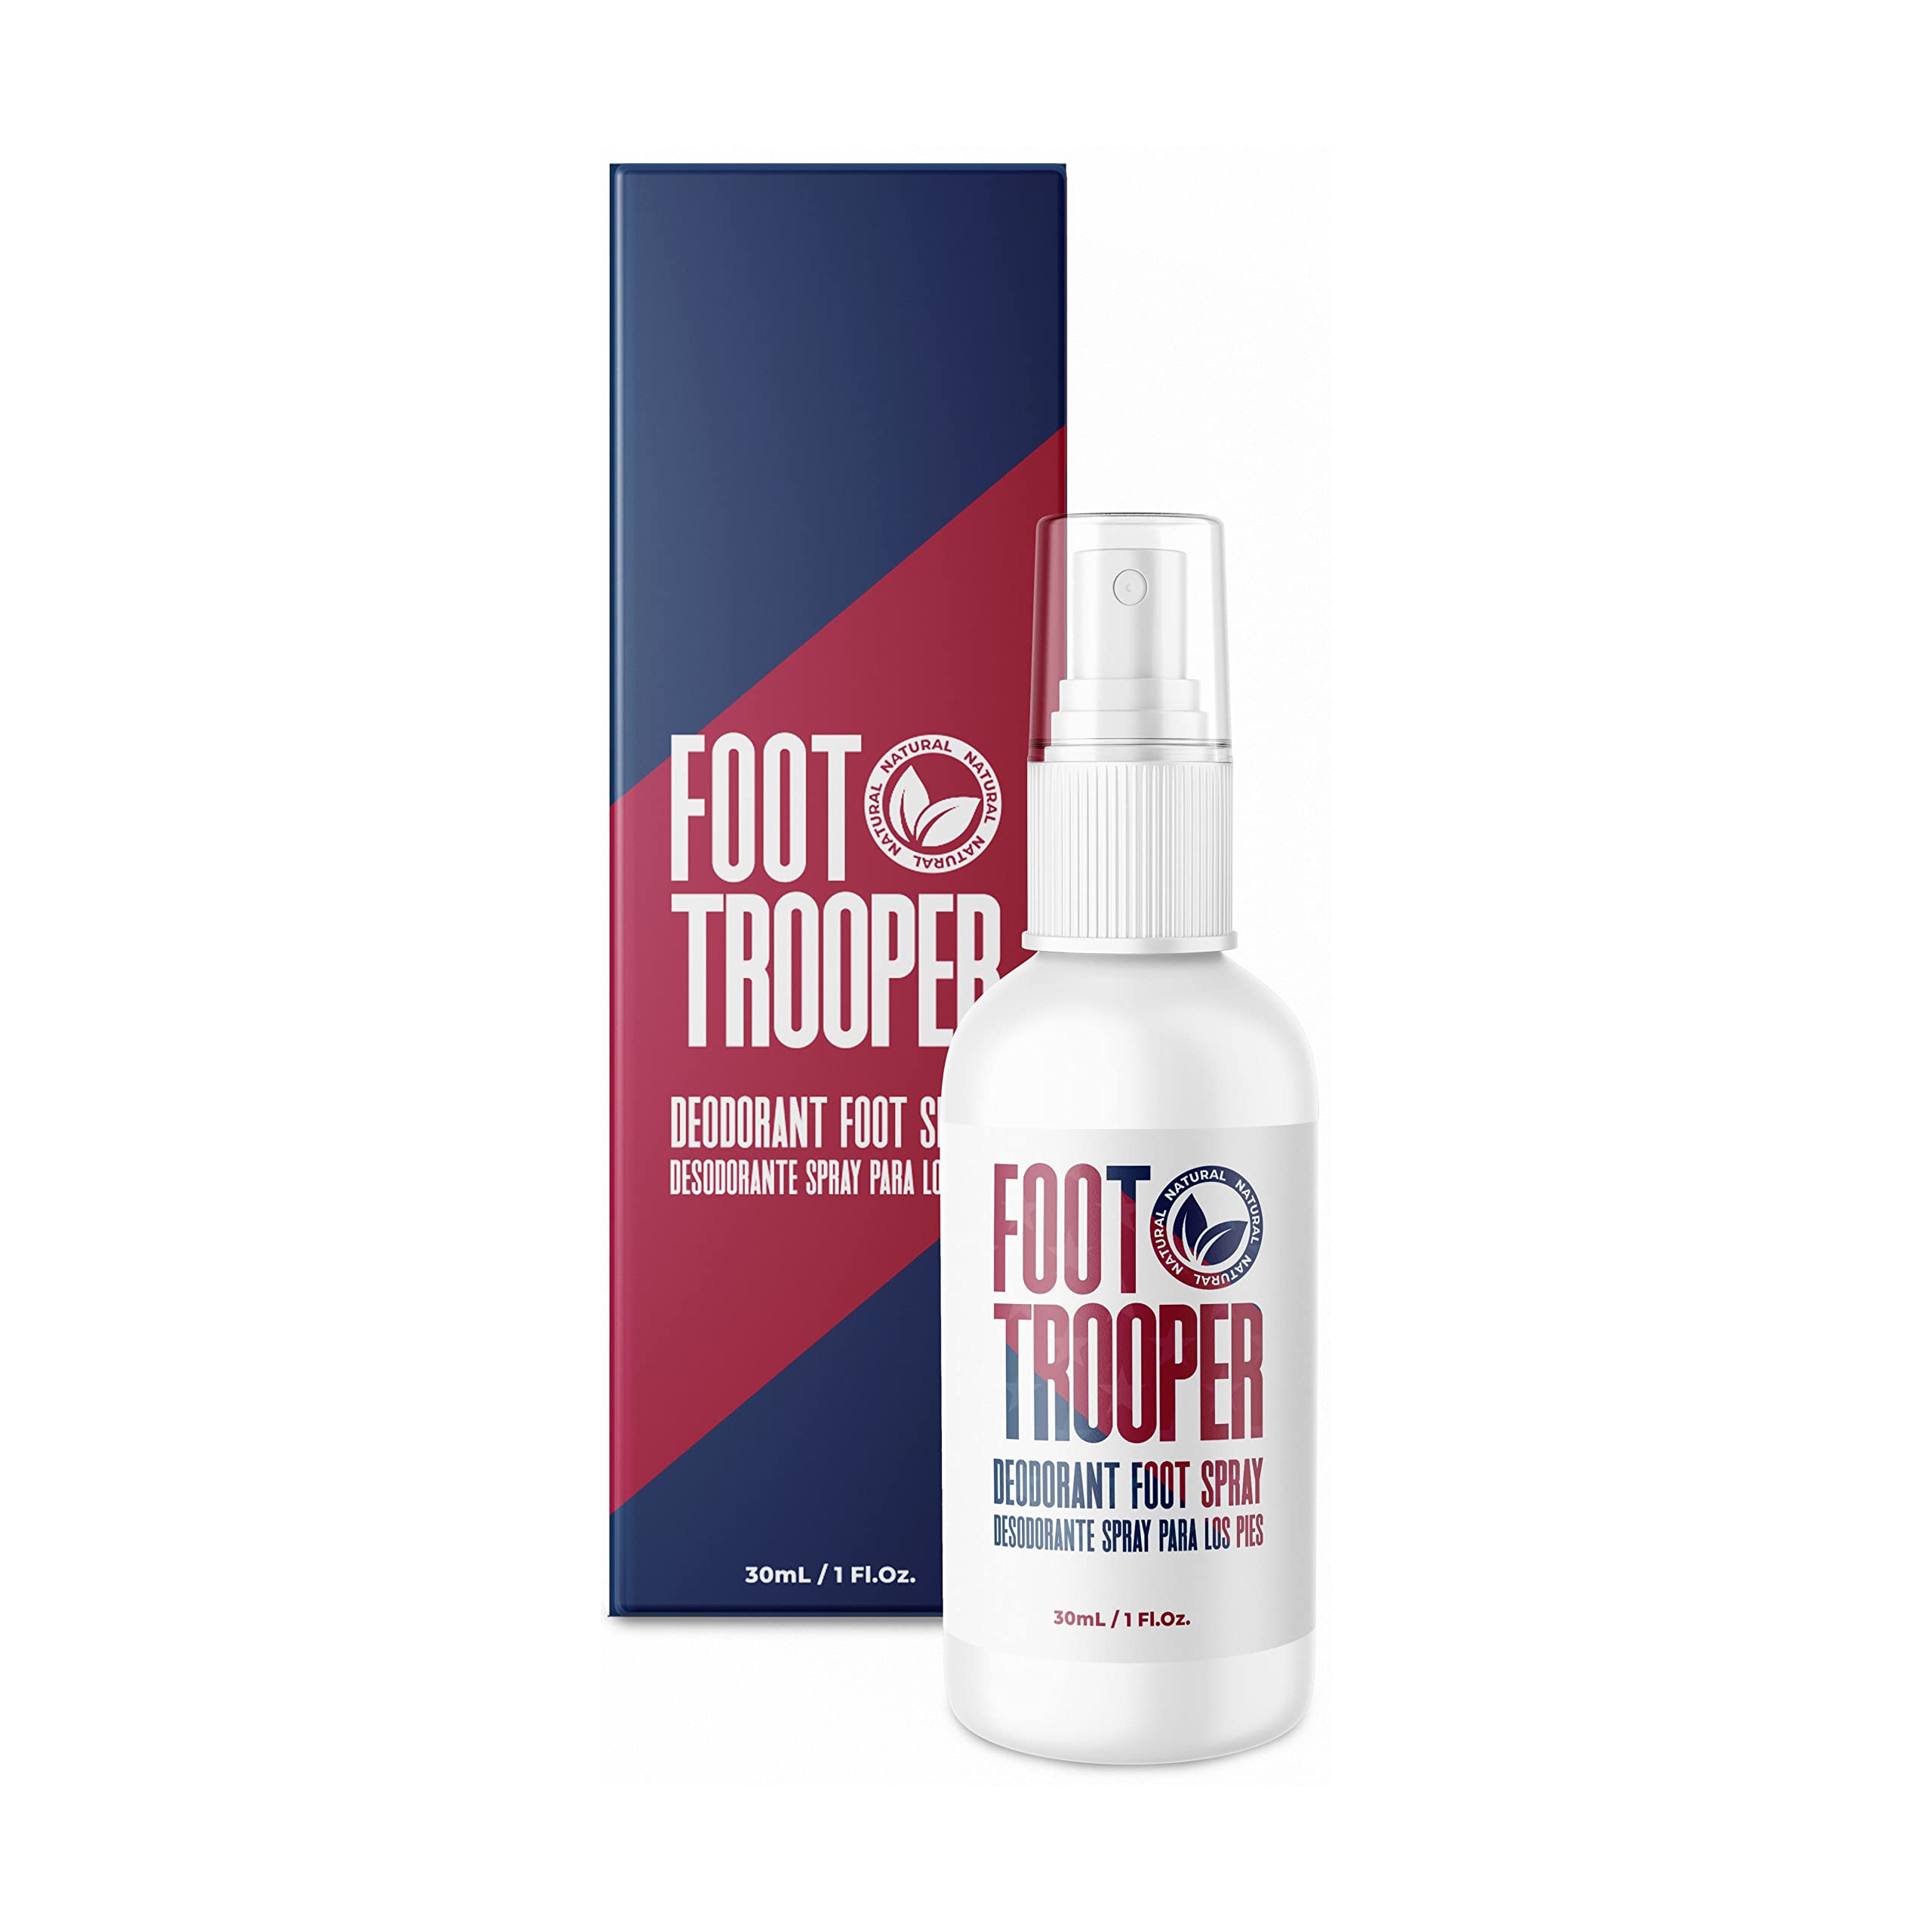 Foot Trooper | Deodorant Foot Spray | 1 Pack